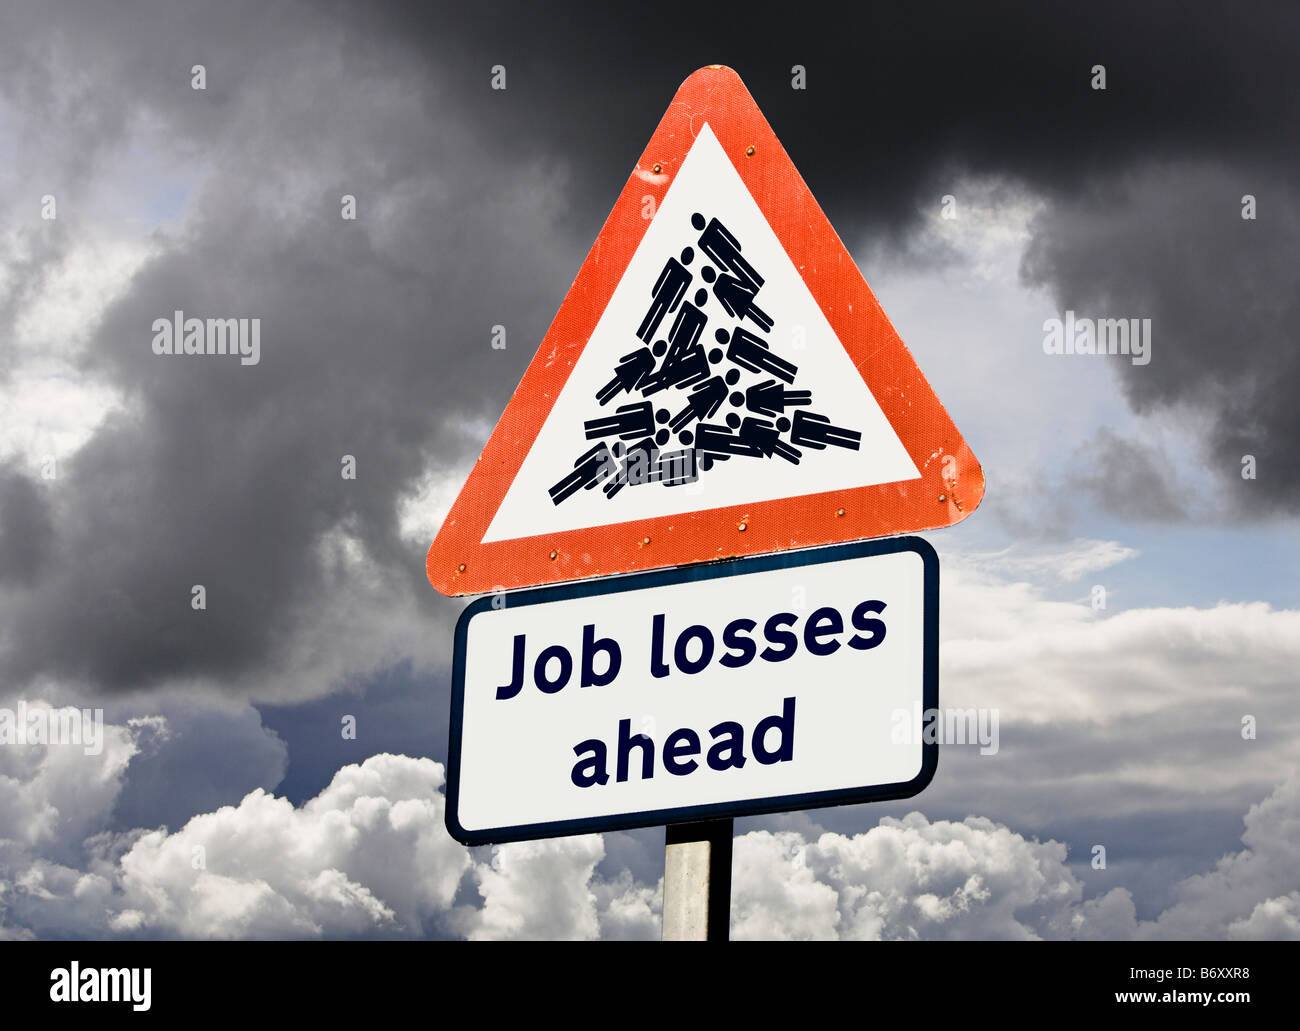 Economía desempleo advertencia reducciones de puestos de trabajo concepto UK - pérdidas de puestos de trabajo signo Foto de stock